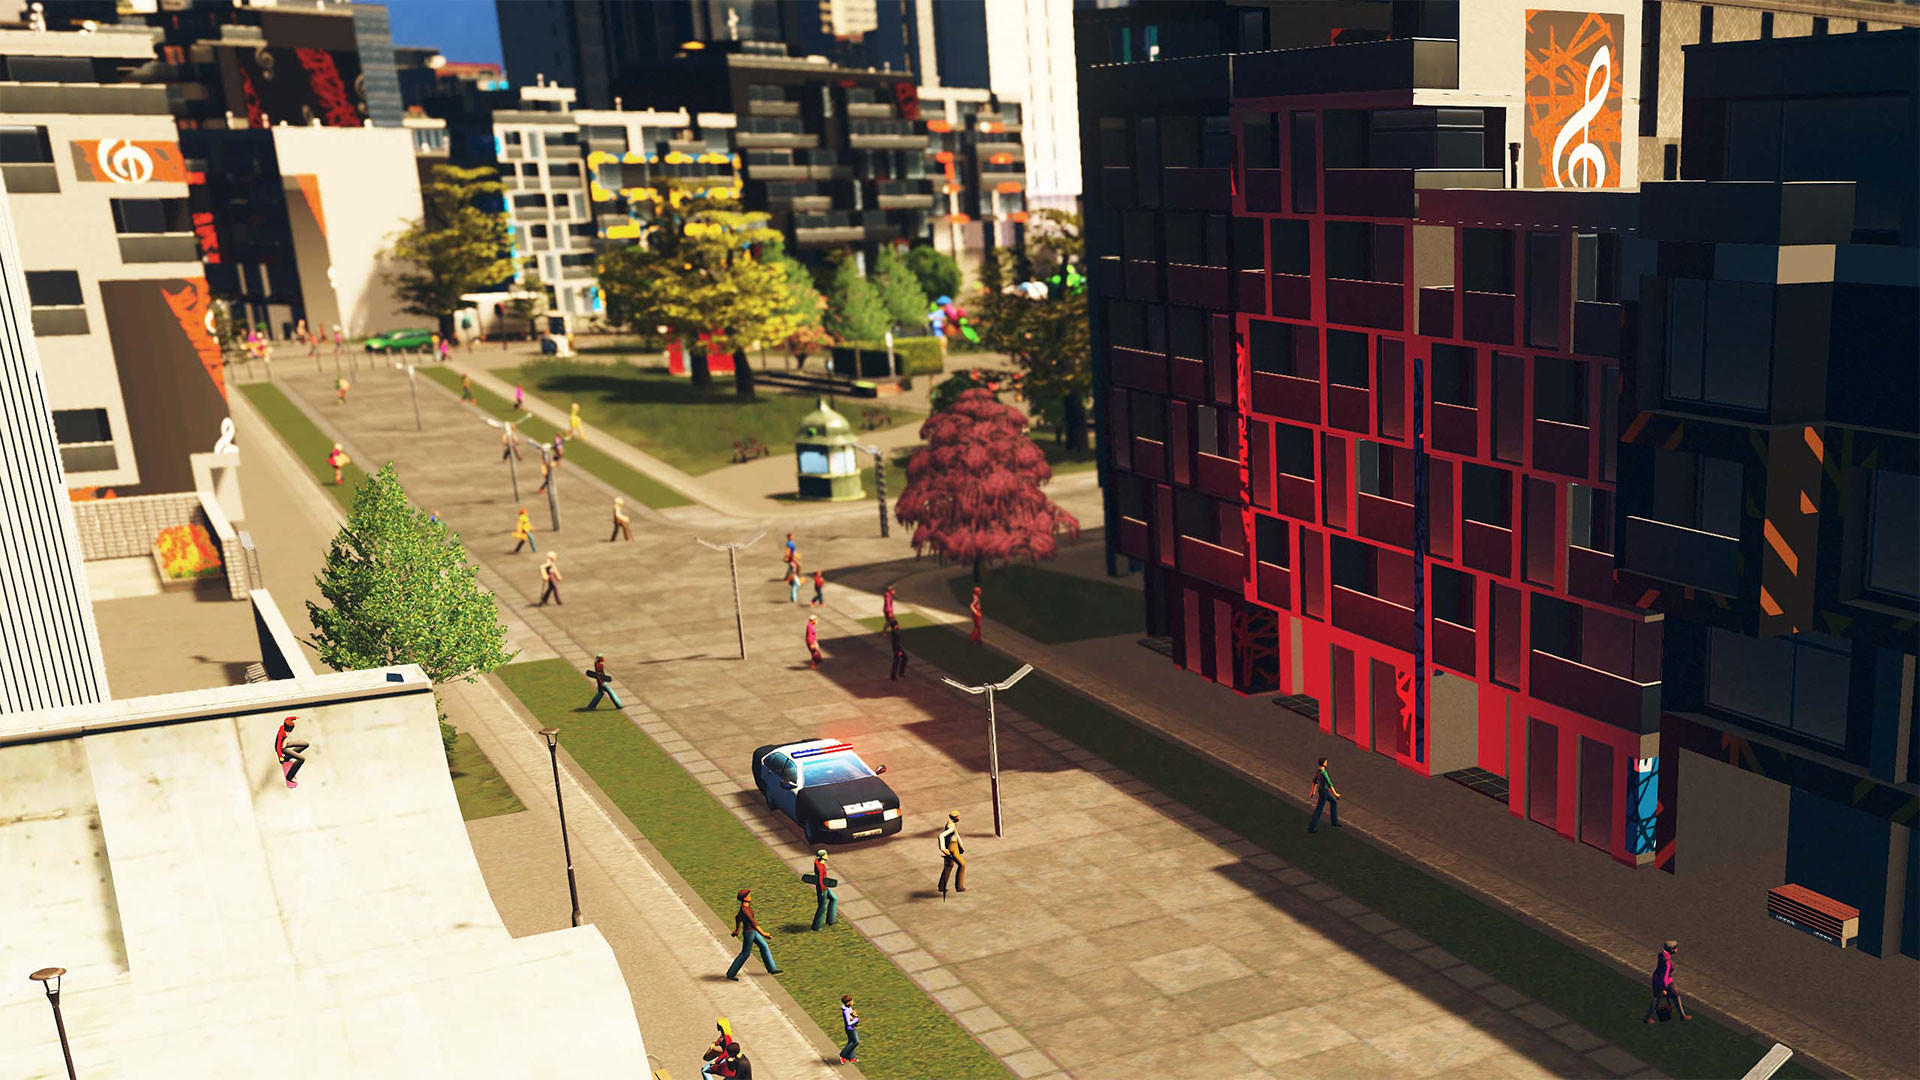 [$ 4.52] Cities: Skylines - Plazas & Promenades DLC Steam CD Key